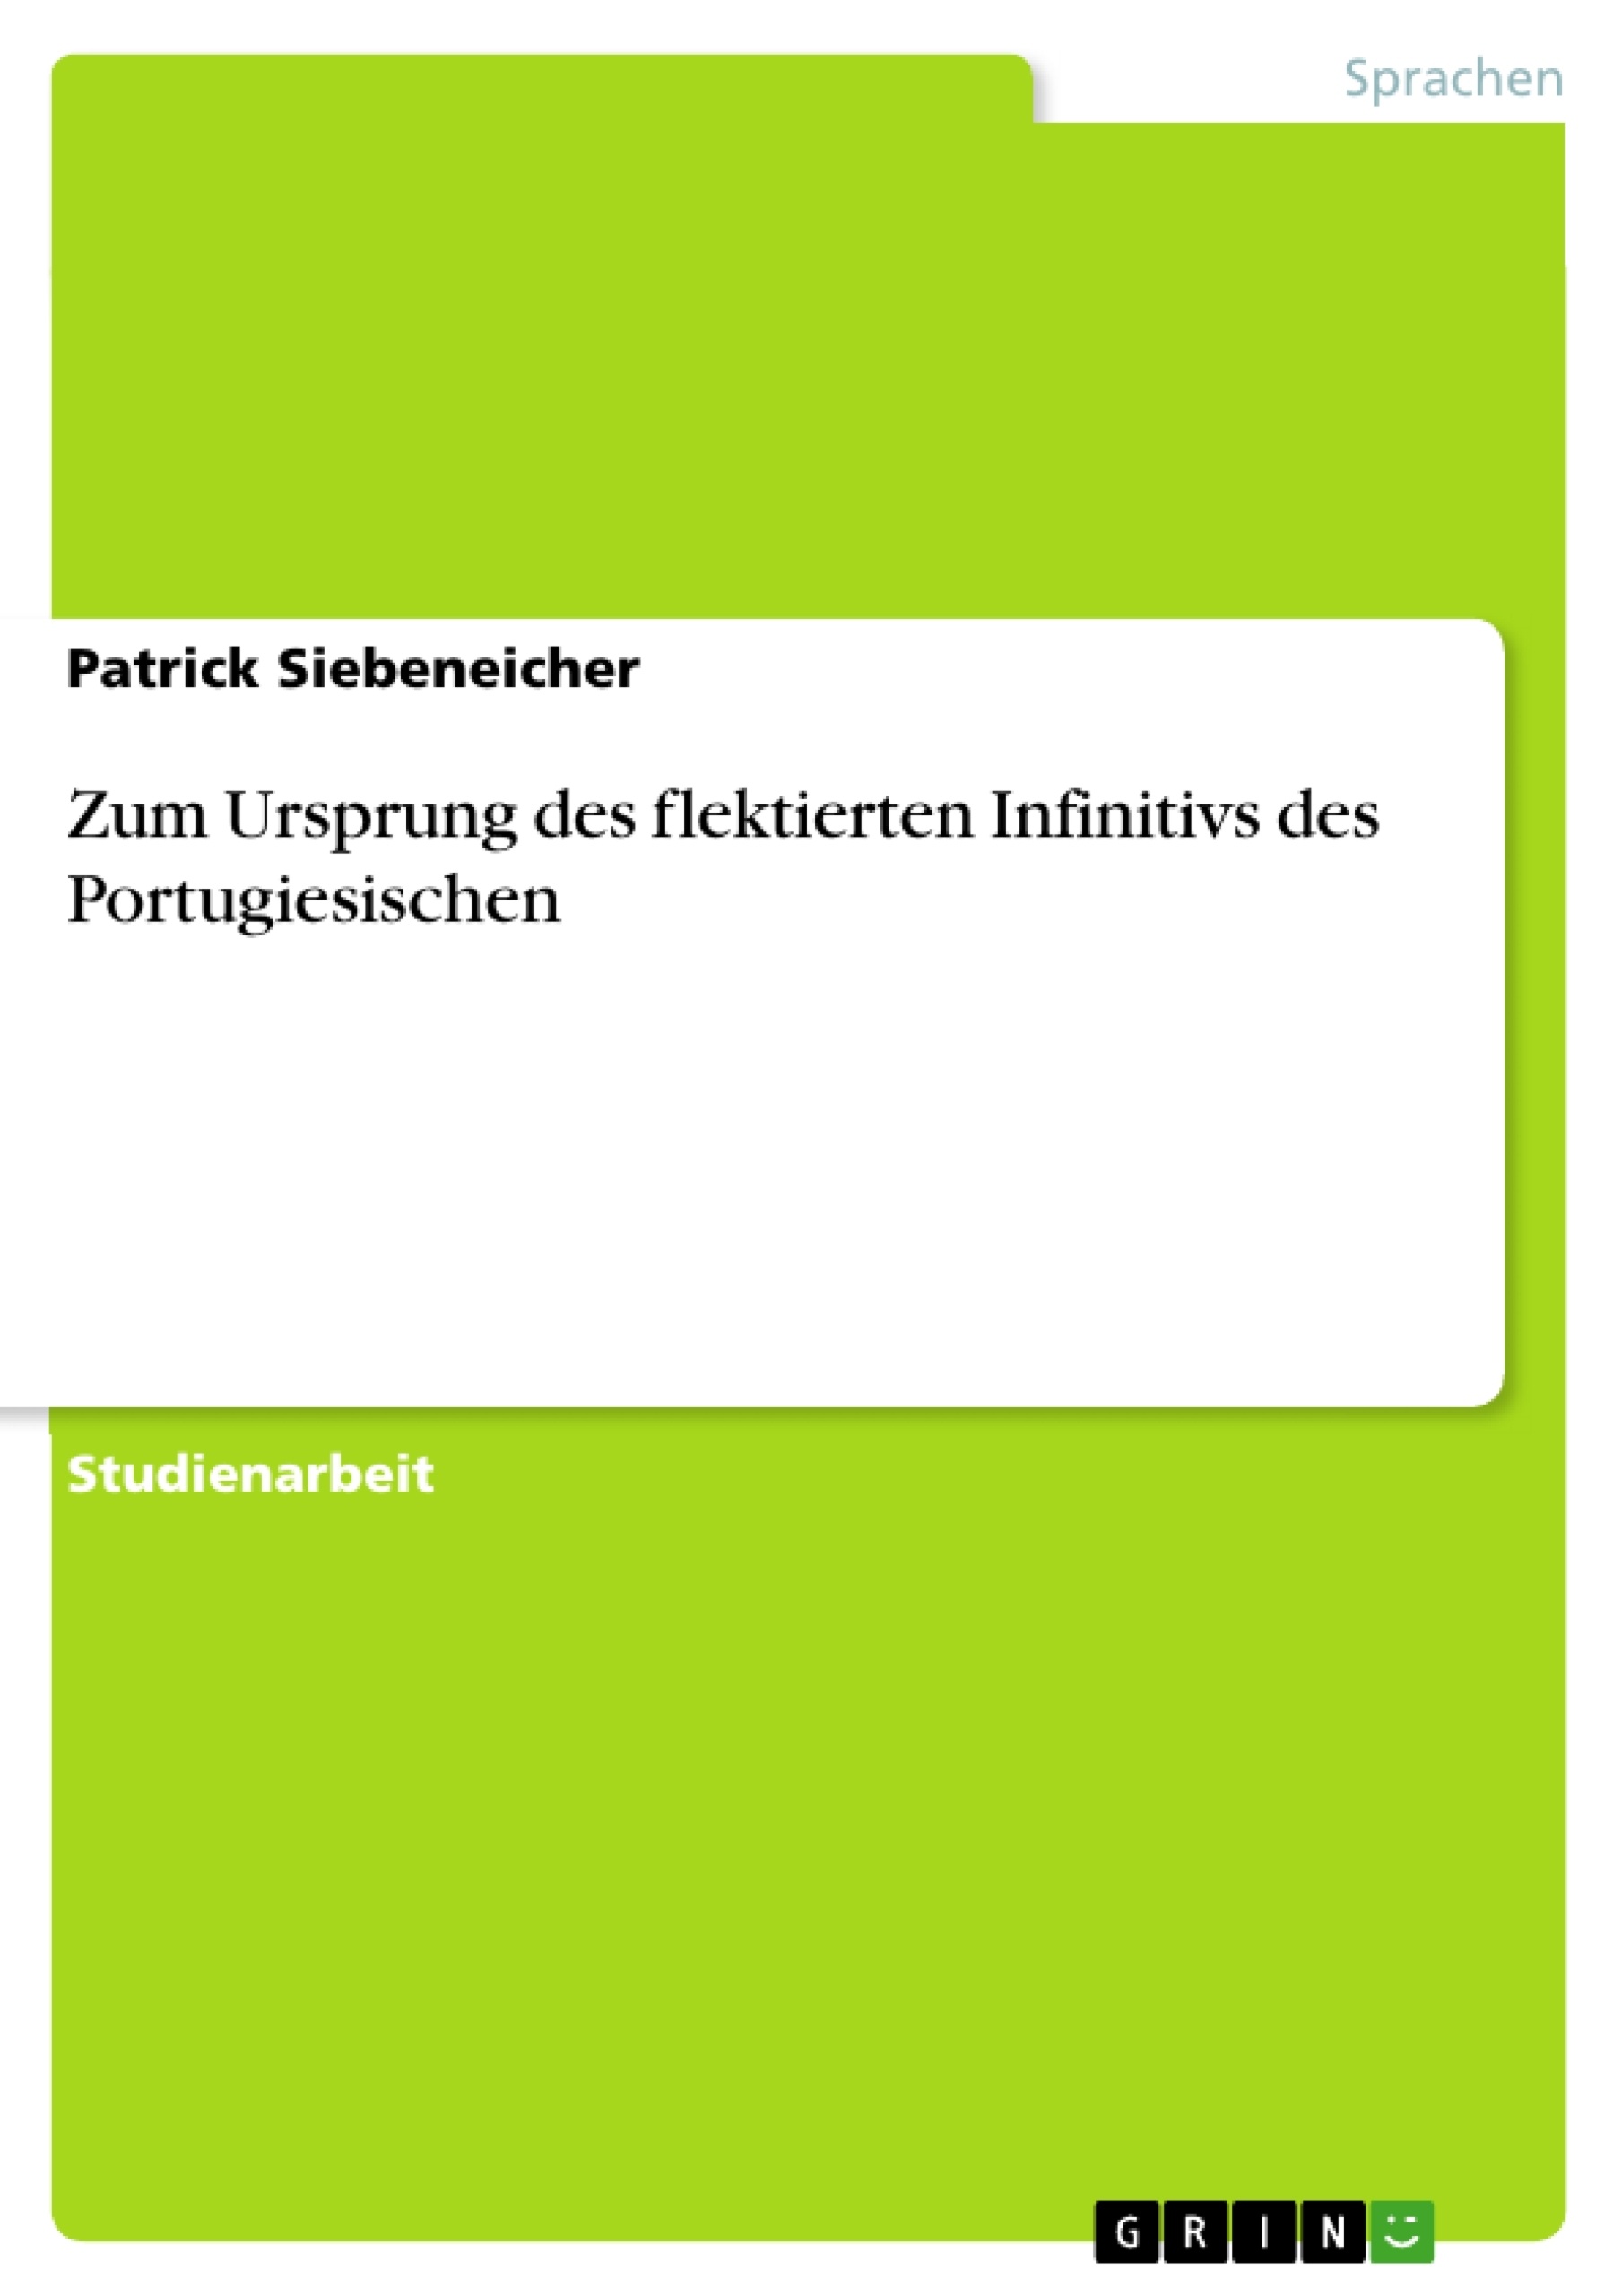 Título: Zum Ursprung des flektierten Infinitivs des Portugiesischen